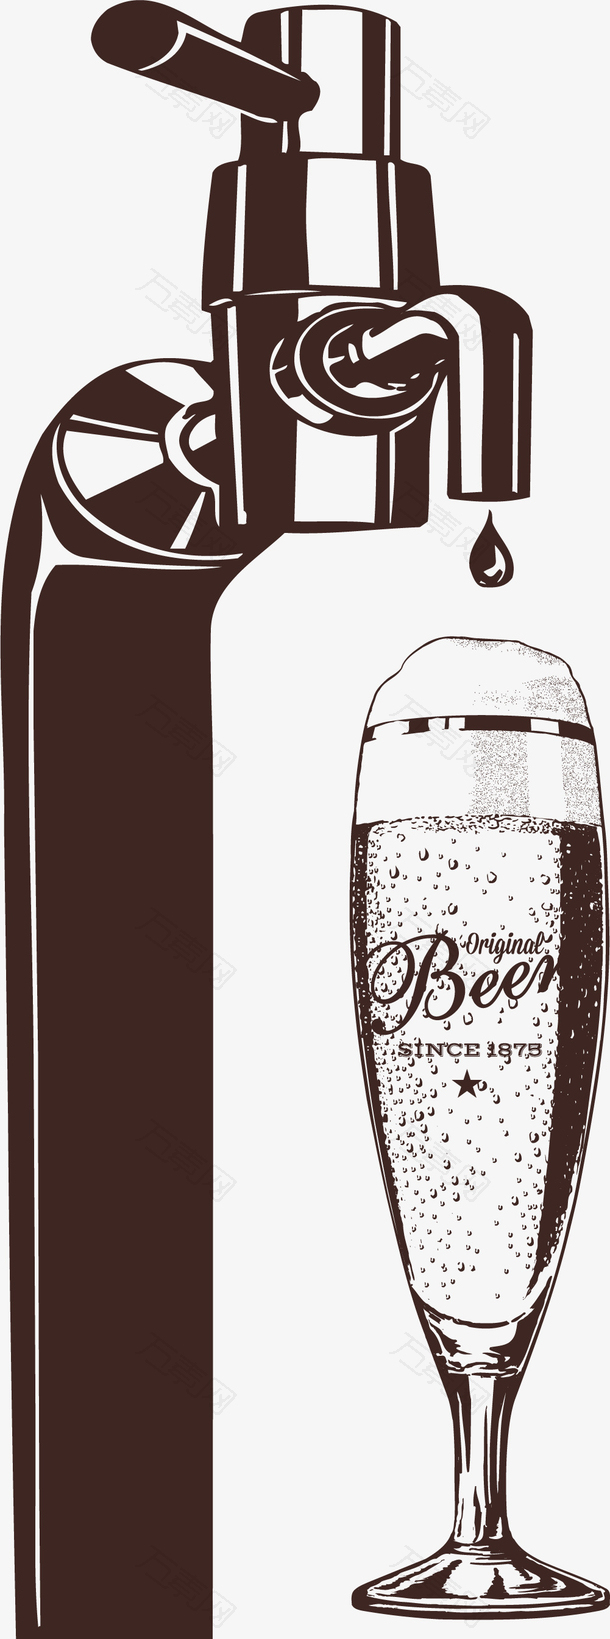 卡通风格剪影啤酒